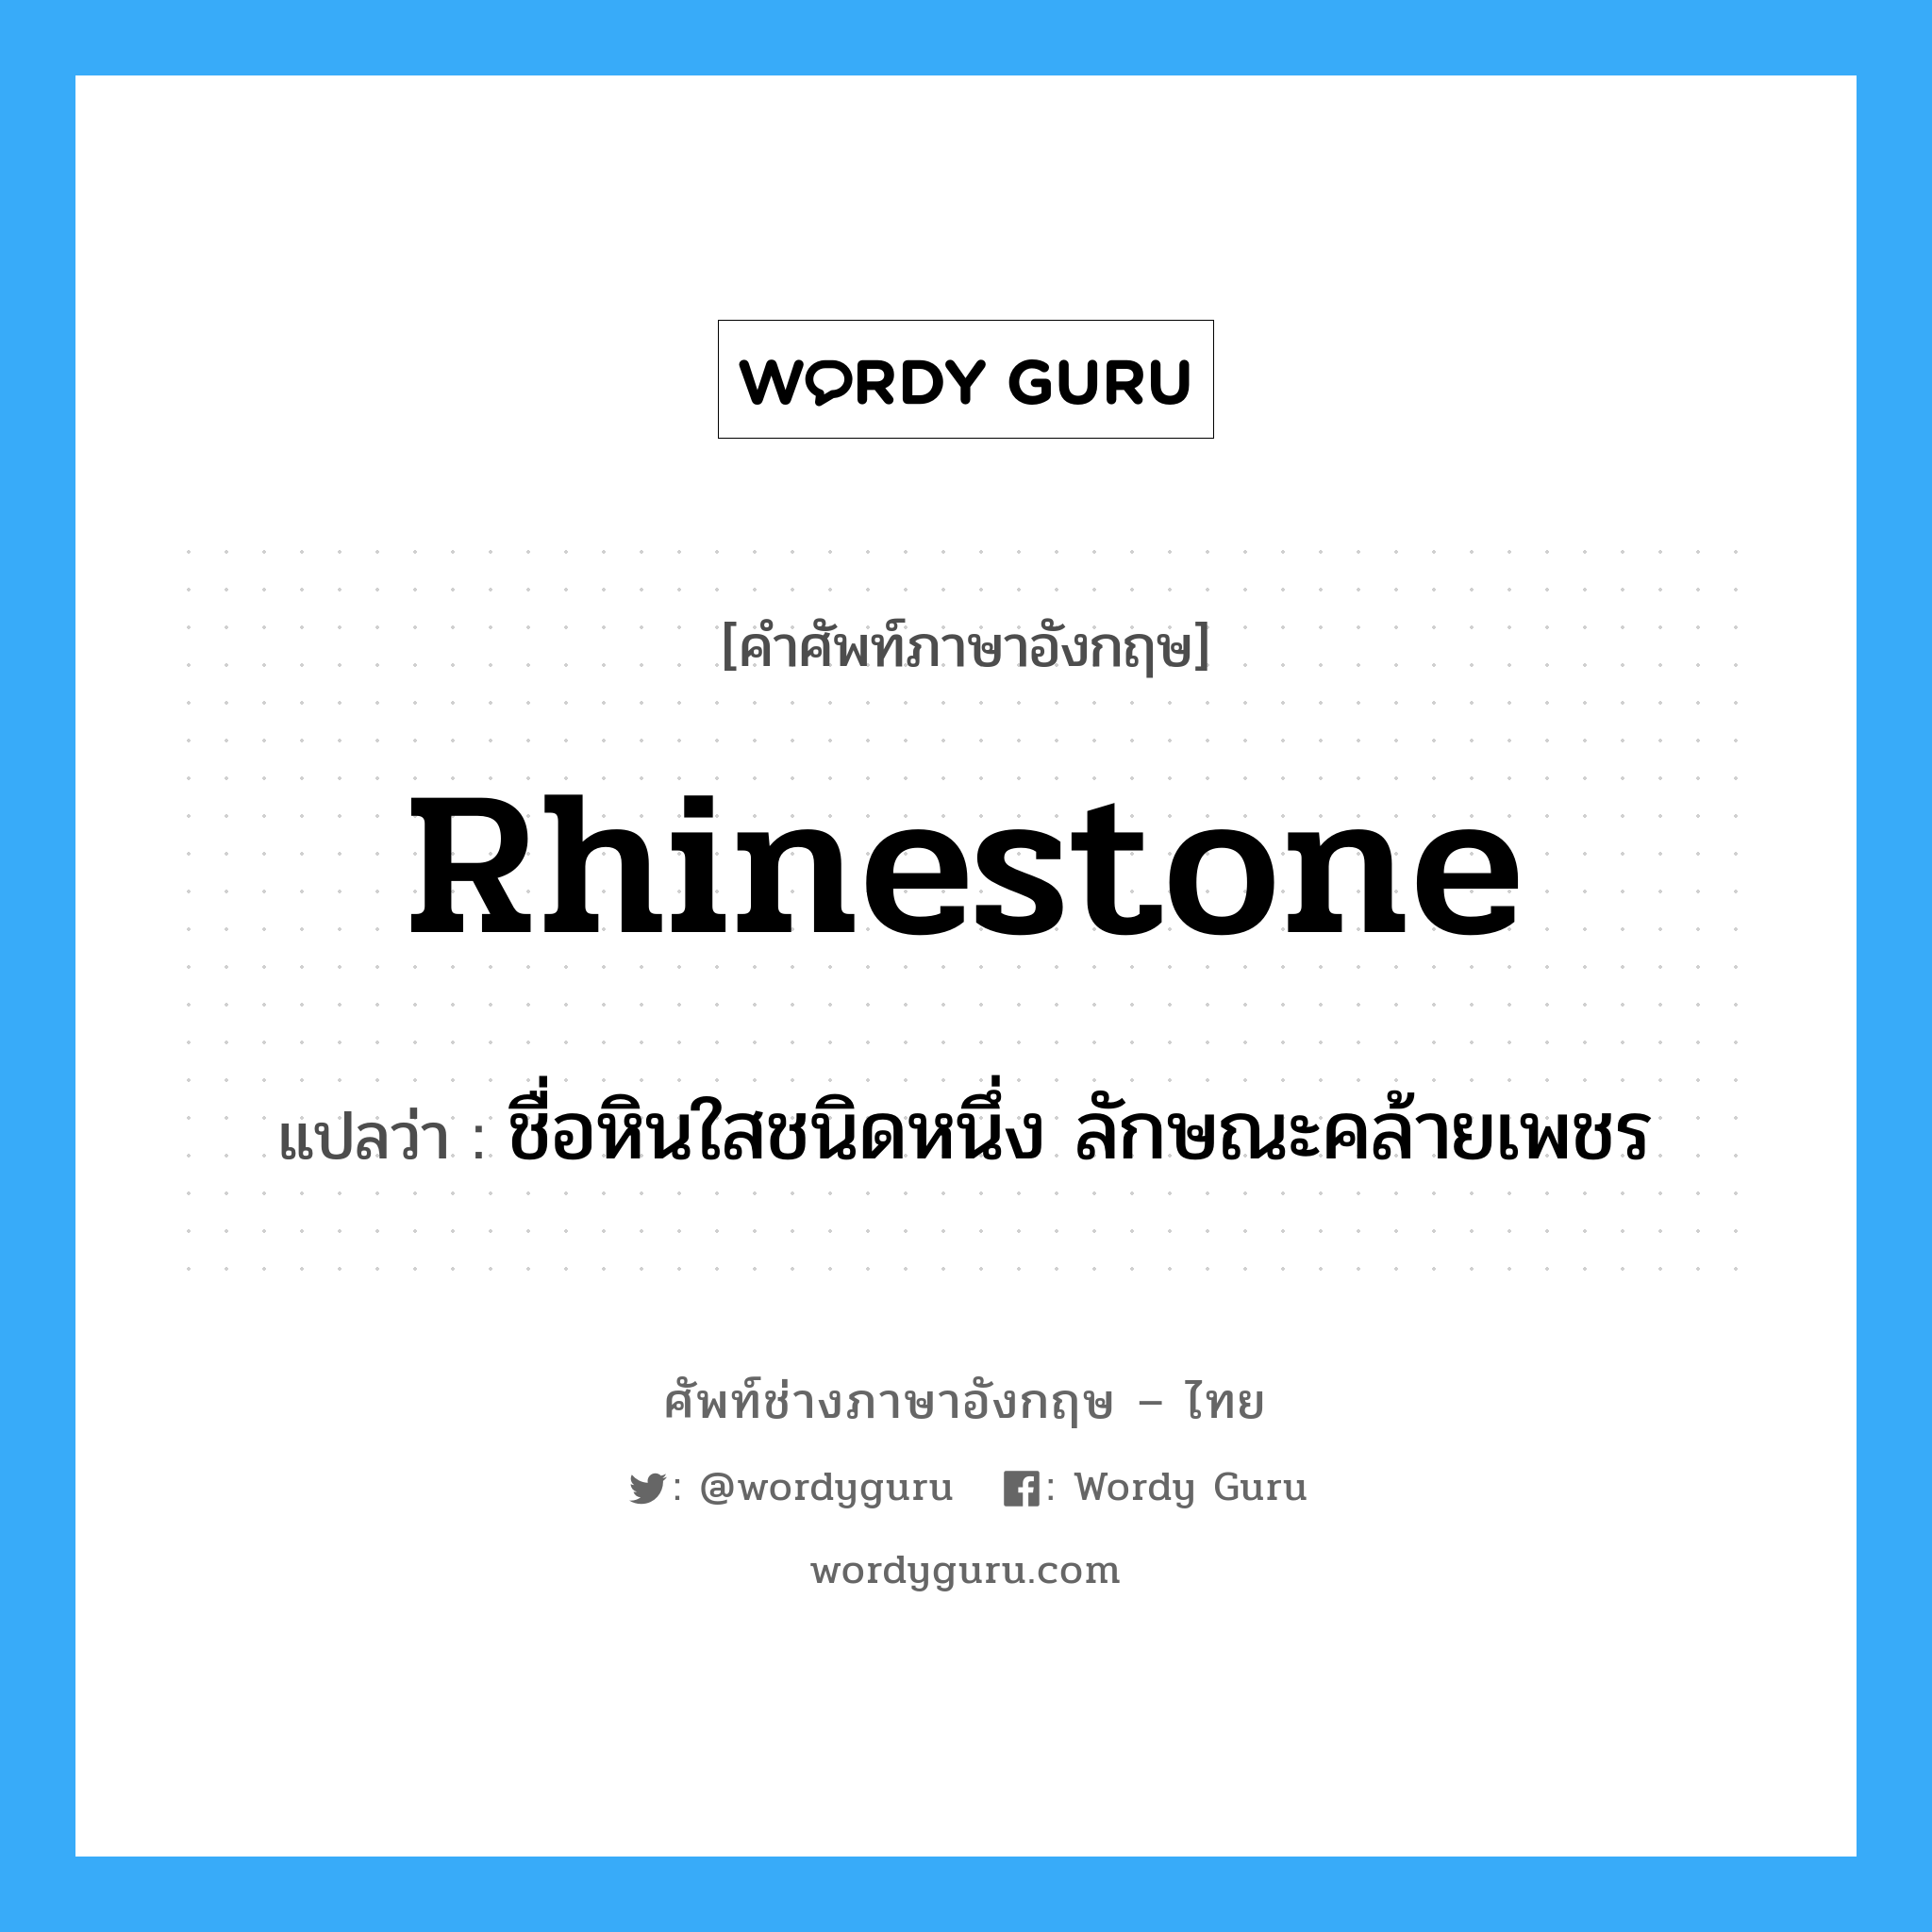 ชื่อหินใสชนิดหนึ่ง ลักษณะคล้ายเพชร ภาษาอังกฤษ?, คำศัพท์ช่างภาษาอังกฤษ - ไทย ชื่อหินใสชนิดหนึ่ง ลักษณะคล้ายเพชร คำศัพท์ภาษาอังกฤษ ชื่อหินใสชนิดหนึ่ง ลักษณะคล้ายเพชร แปลว่า rhinestone